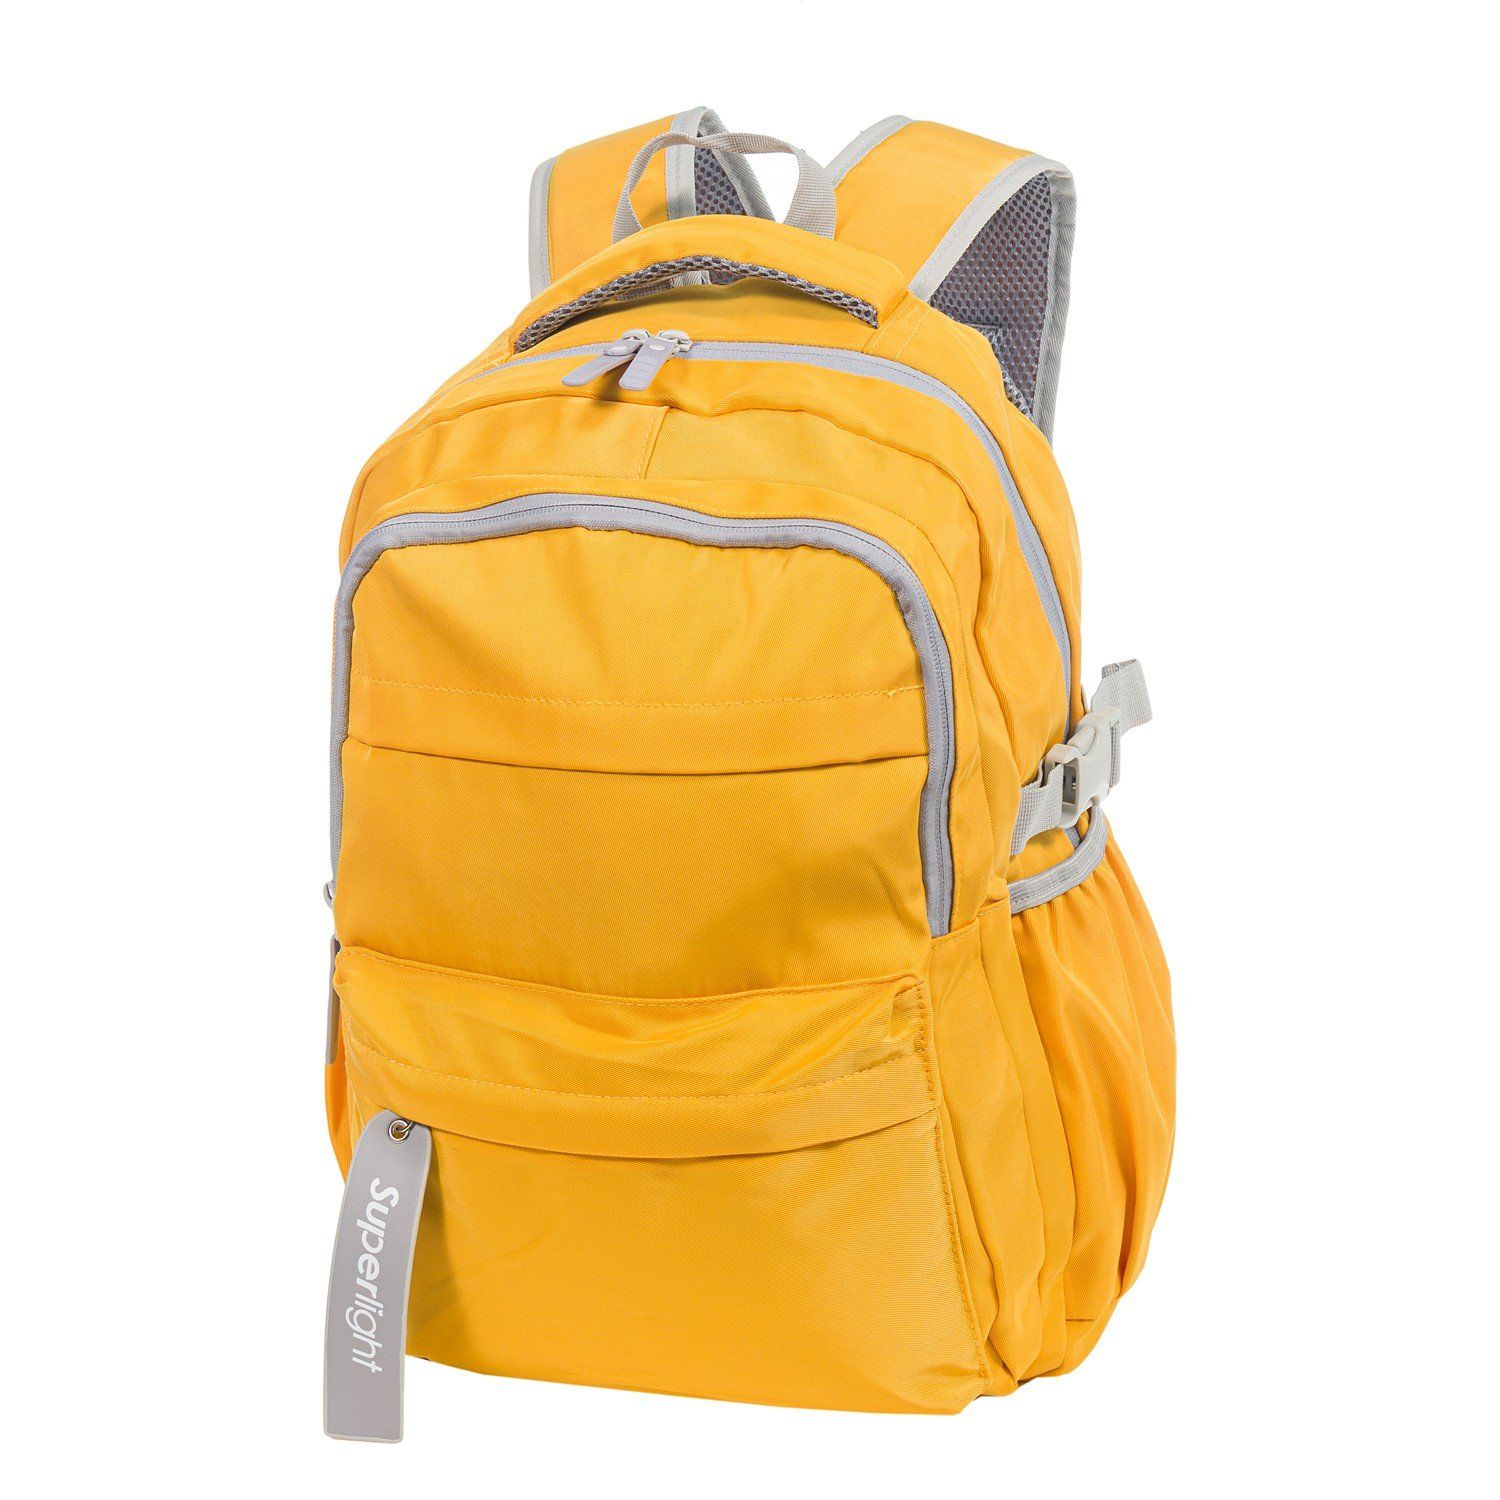 Рюкзак женский городской, желтый однотонный, с широкими анатомическими лямками, объем 11 л